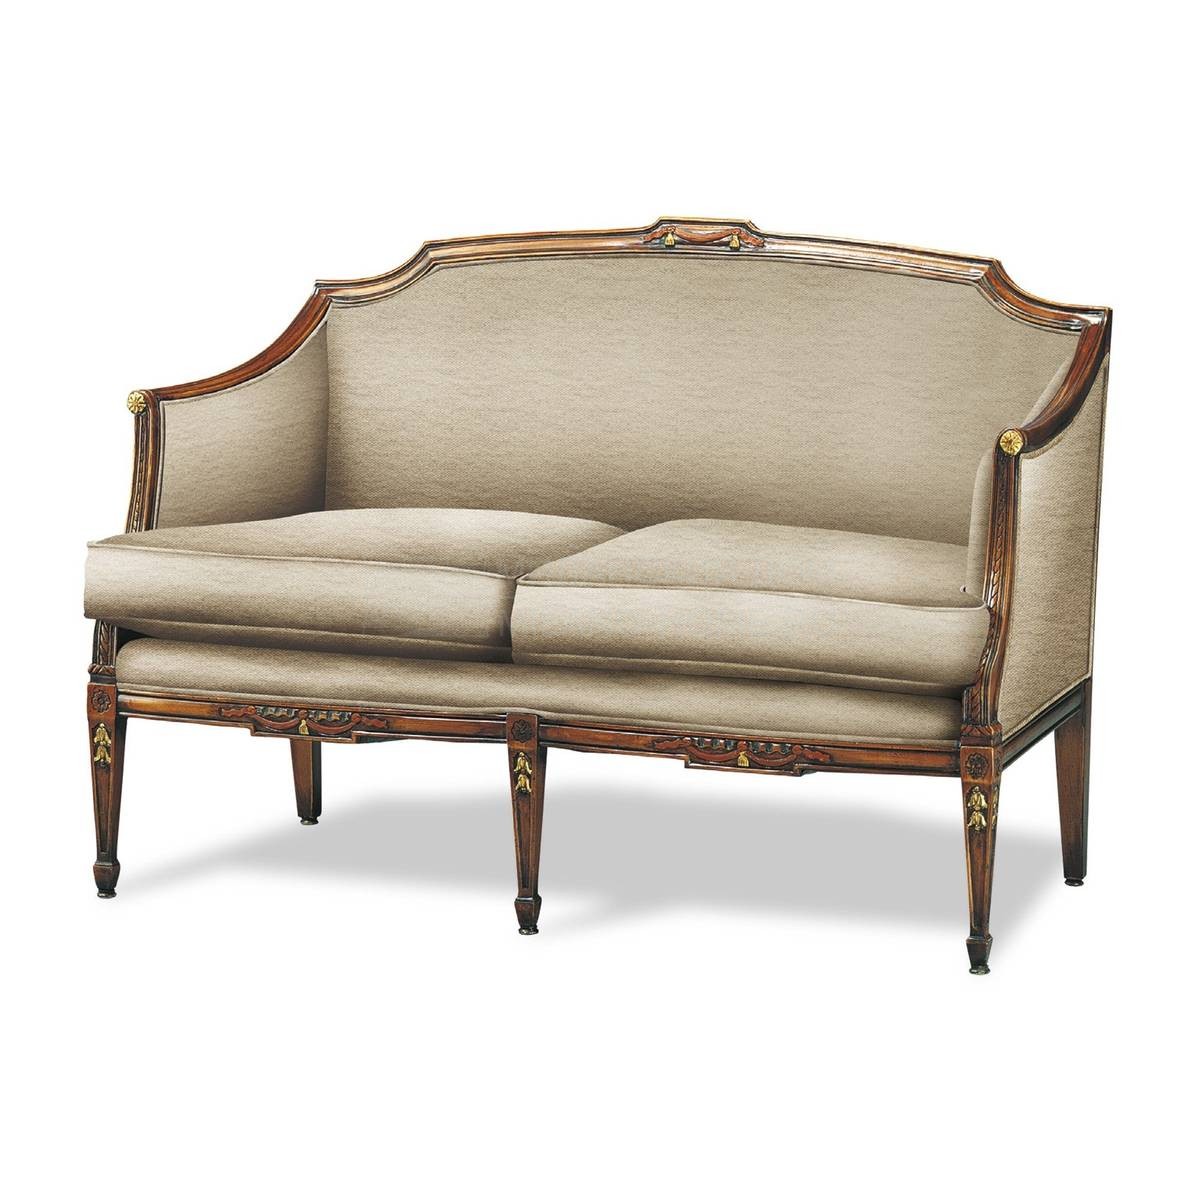 Прямой диван The Upholstery/D238C из Италии фабрики FRANCESCO MOLON